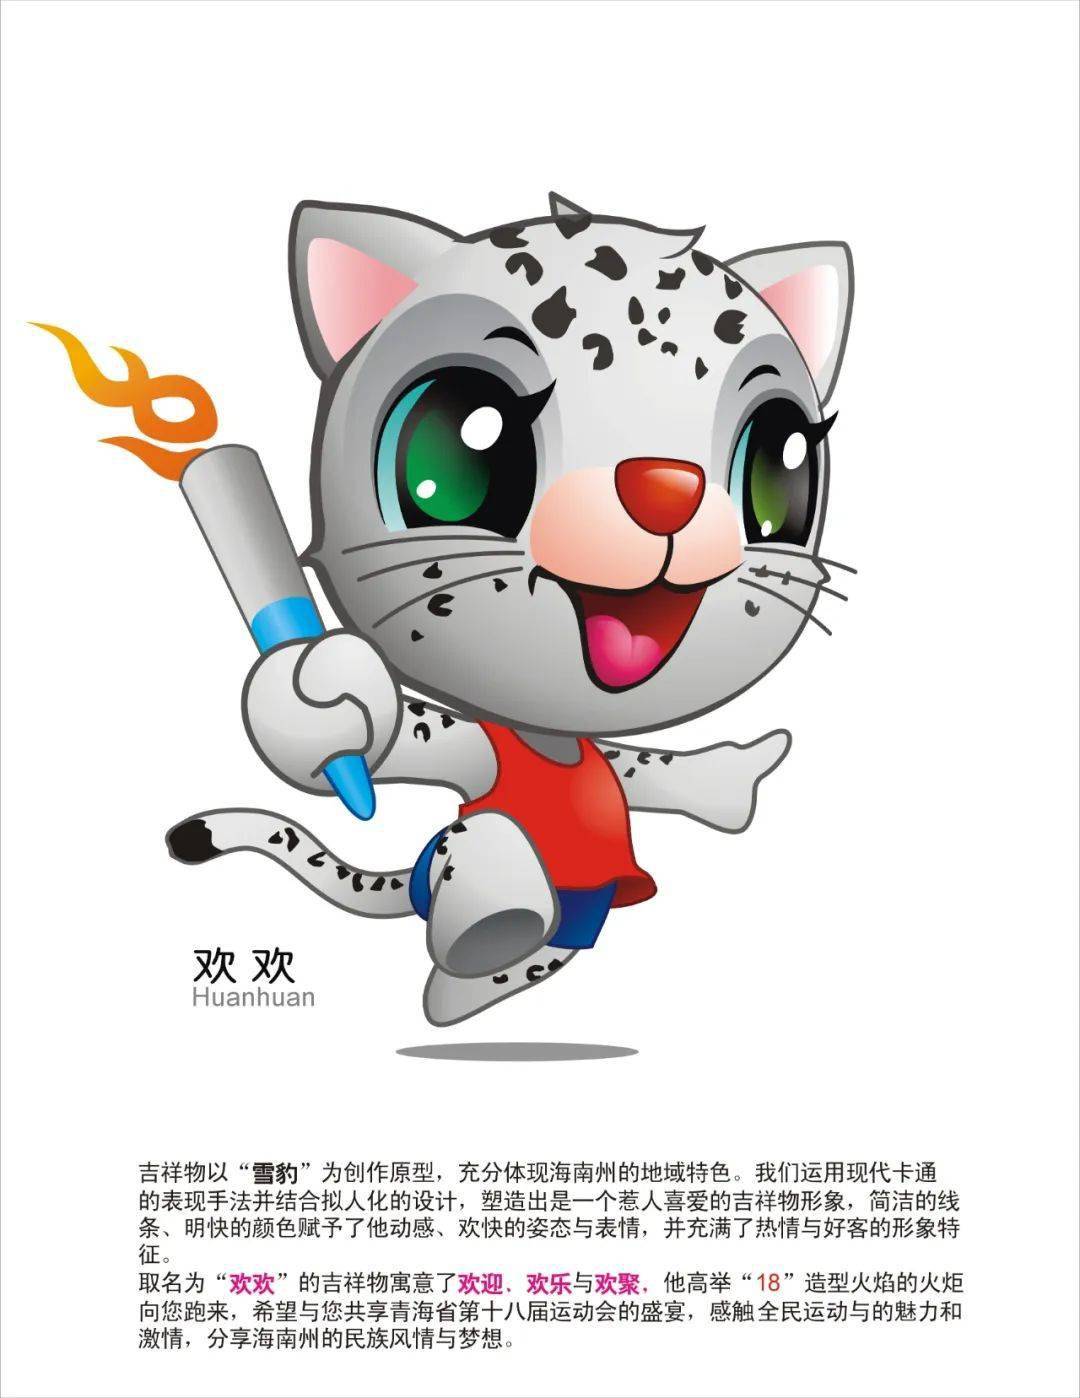 省运会专栏丨第十八届省运会吉祥物设计图展示一